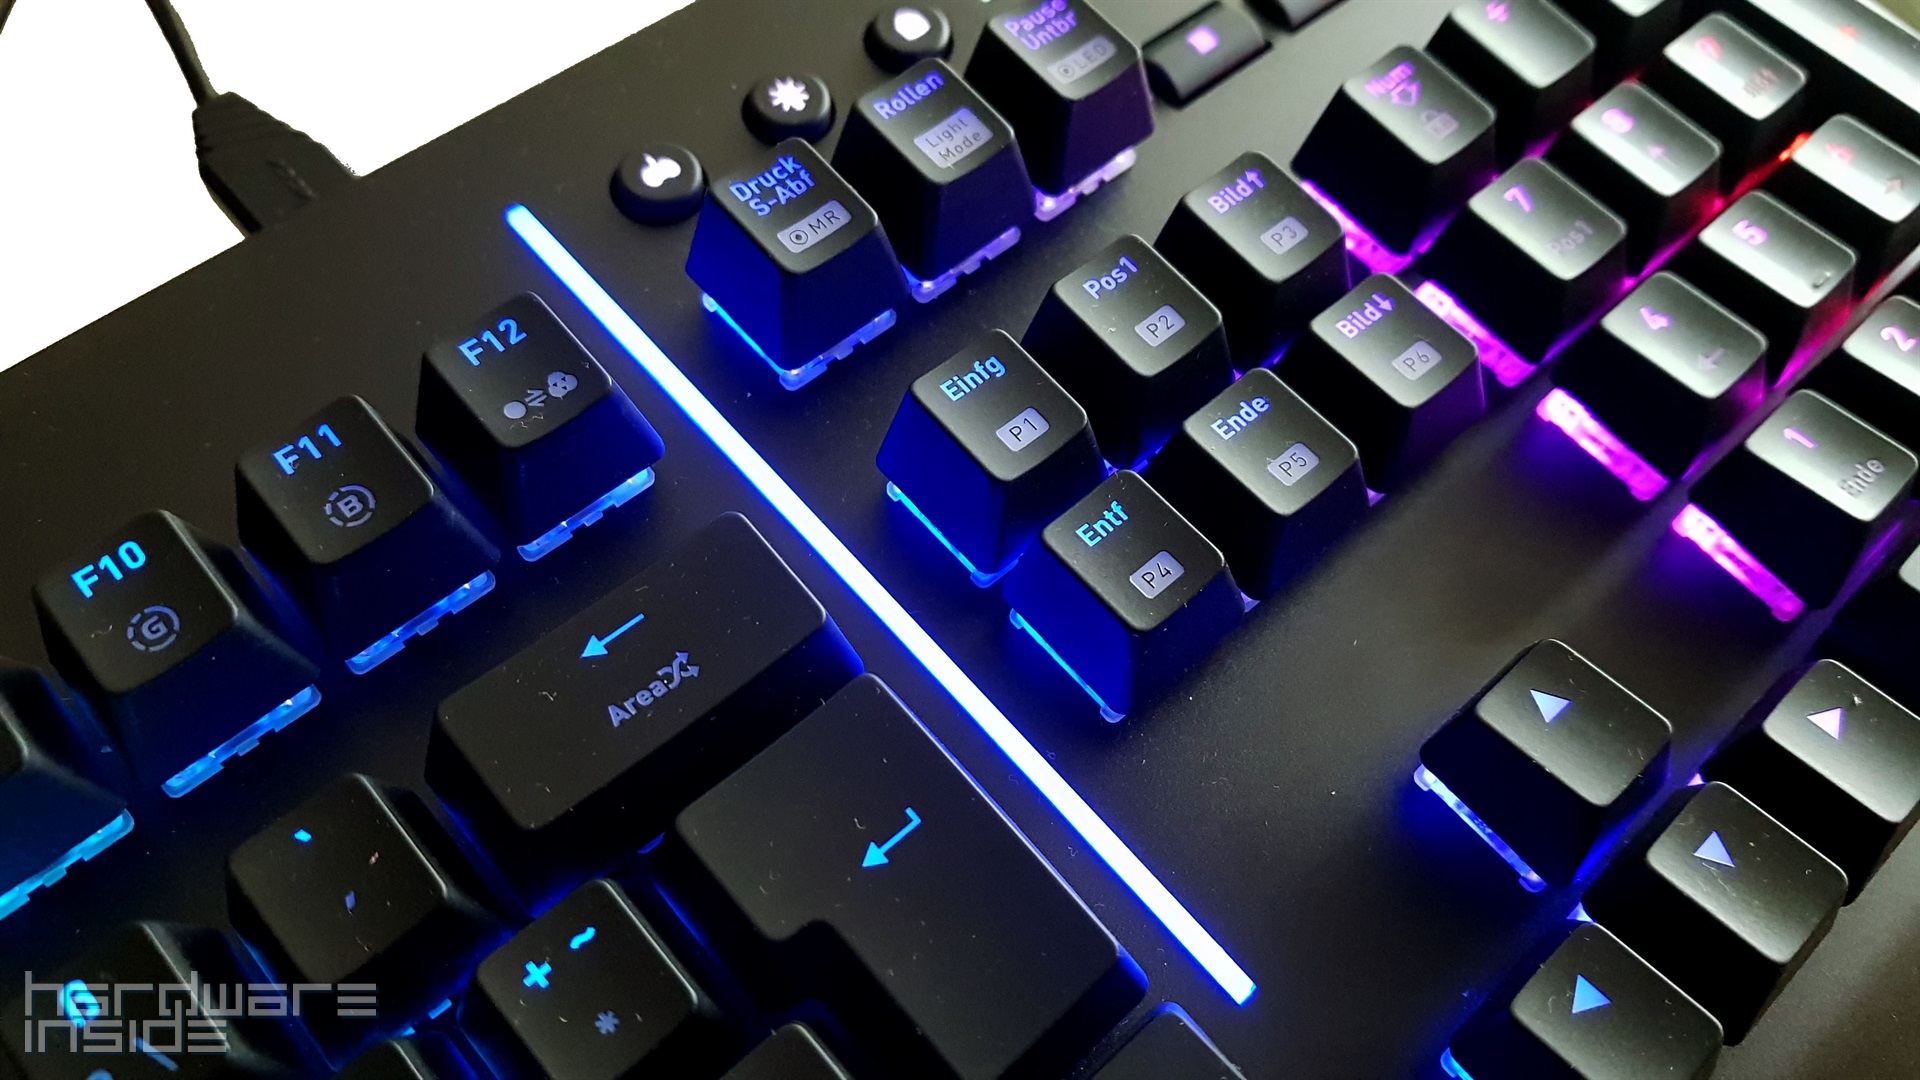 Thermaltake Level 20 RGB Gaming Keyboard - 42